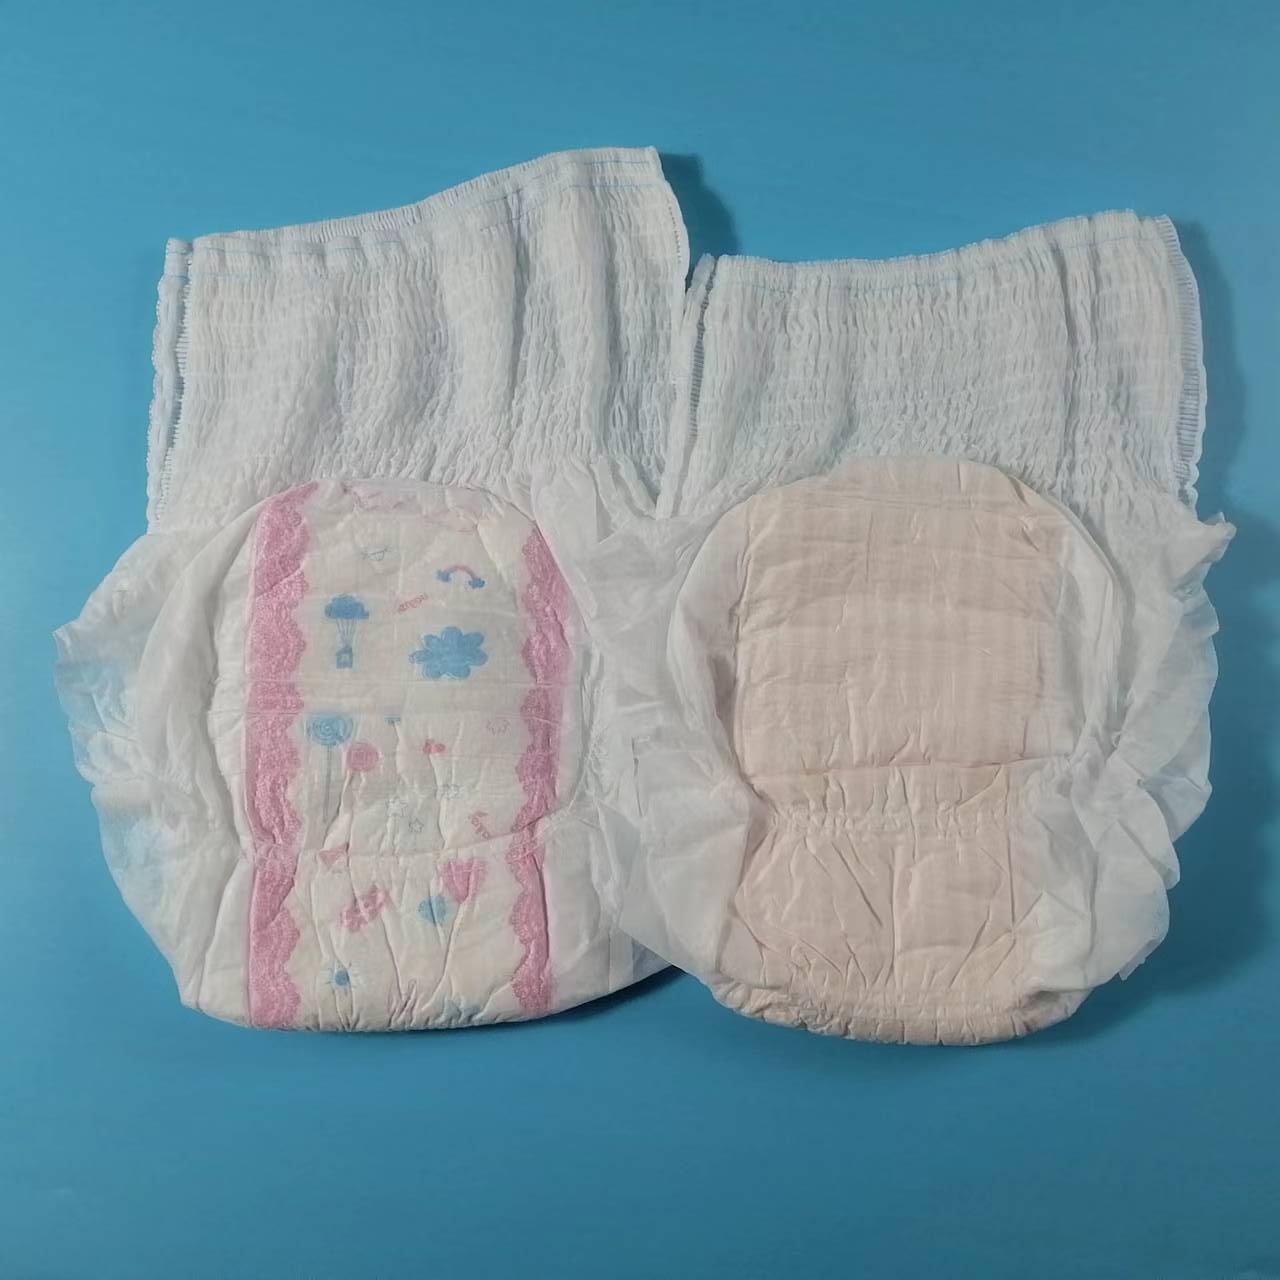 Bas prix meilleure qualité pantalons menstruels jetables serviette hygiénique type de culotte avec surface douce et saine